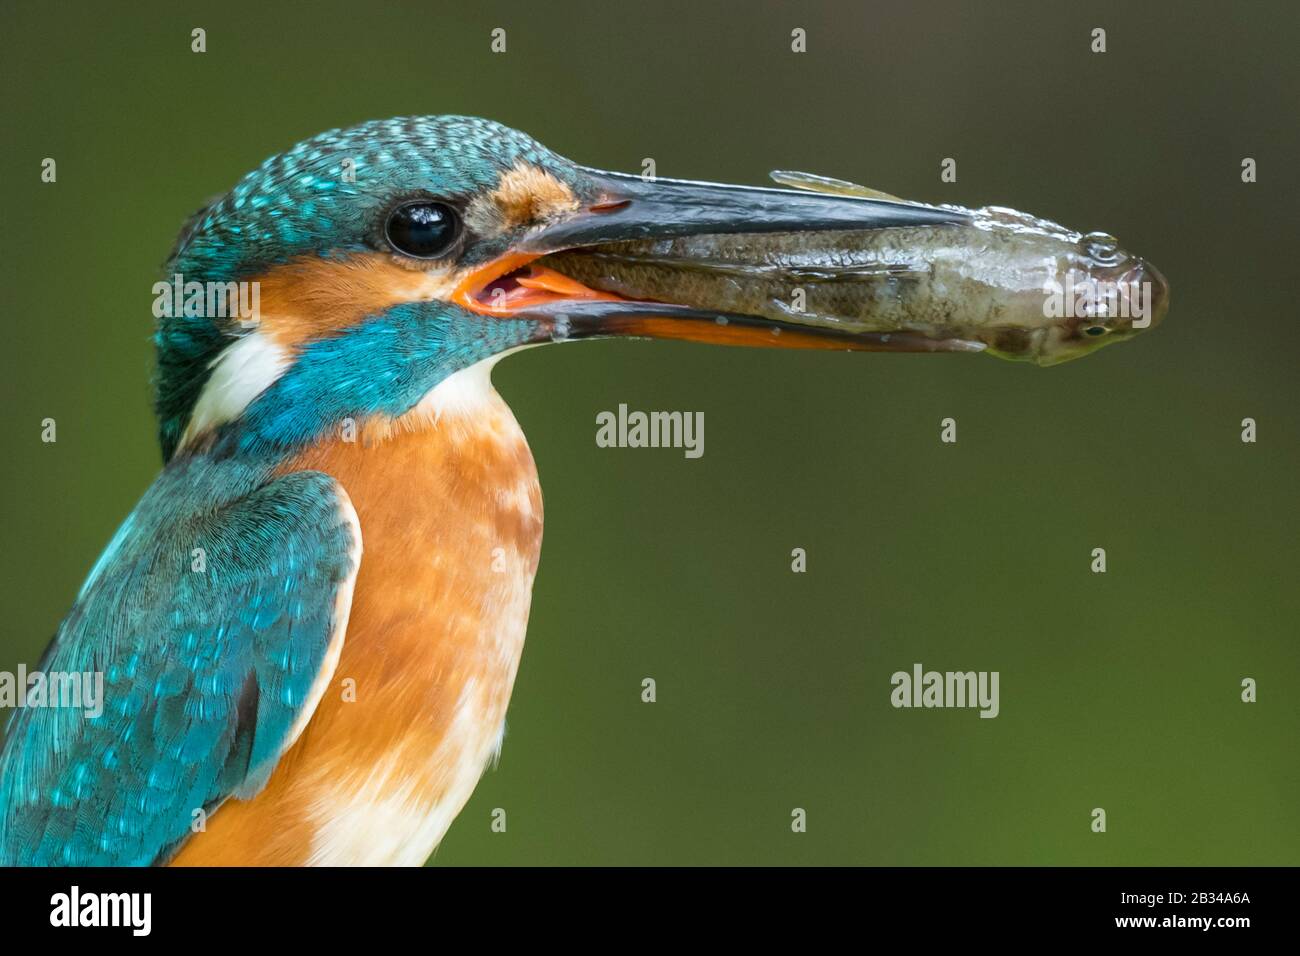 River kingfisher (Alcedo atthis), avec des poissons préyés dans le projet de loi, vue latérale, Pays-Bas, Naarden Banque D'Images